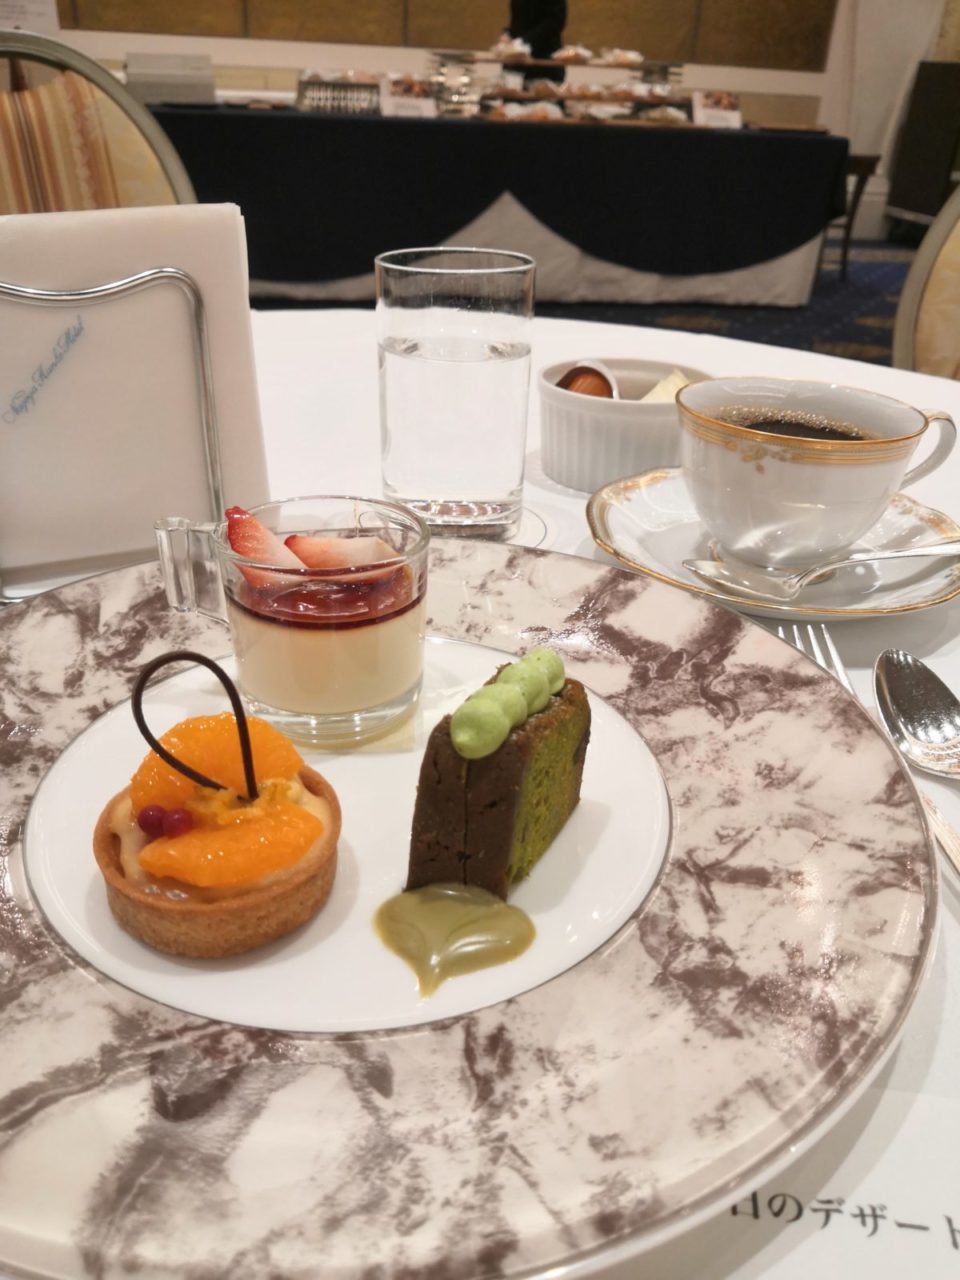 名古屋観光ホテルで3種類の地元食材使用デザートプレート